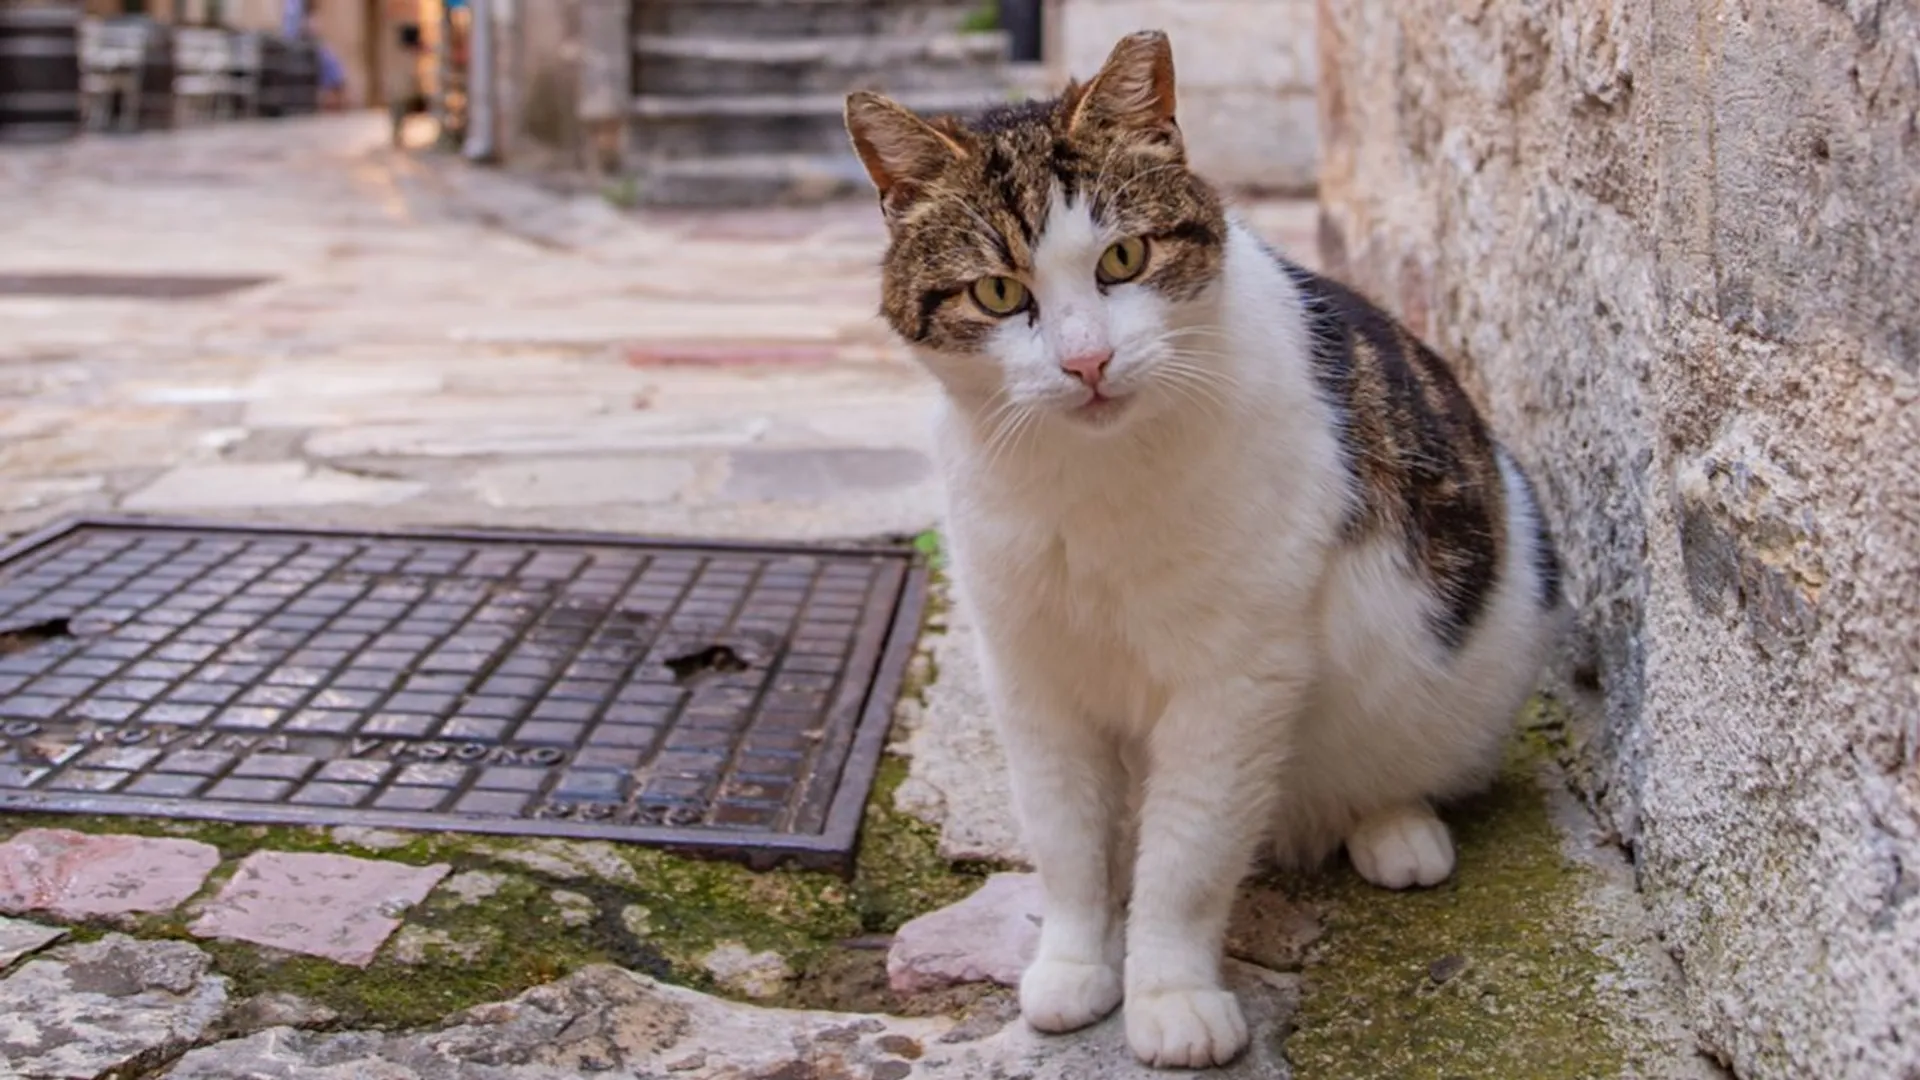 Podróże śladami zwierząt: Koty Kotoru. Mroczny proceder rozgrywa się tuż pod nosem turystów